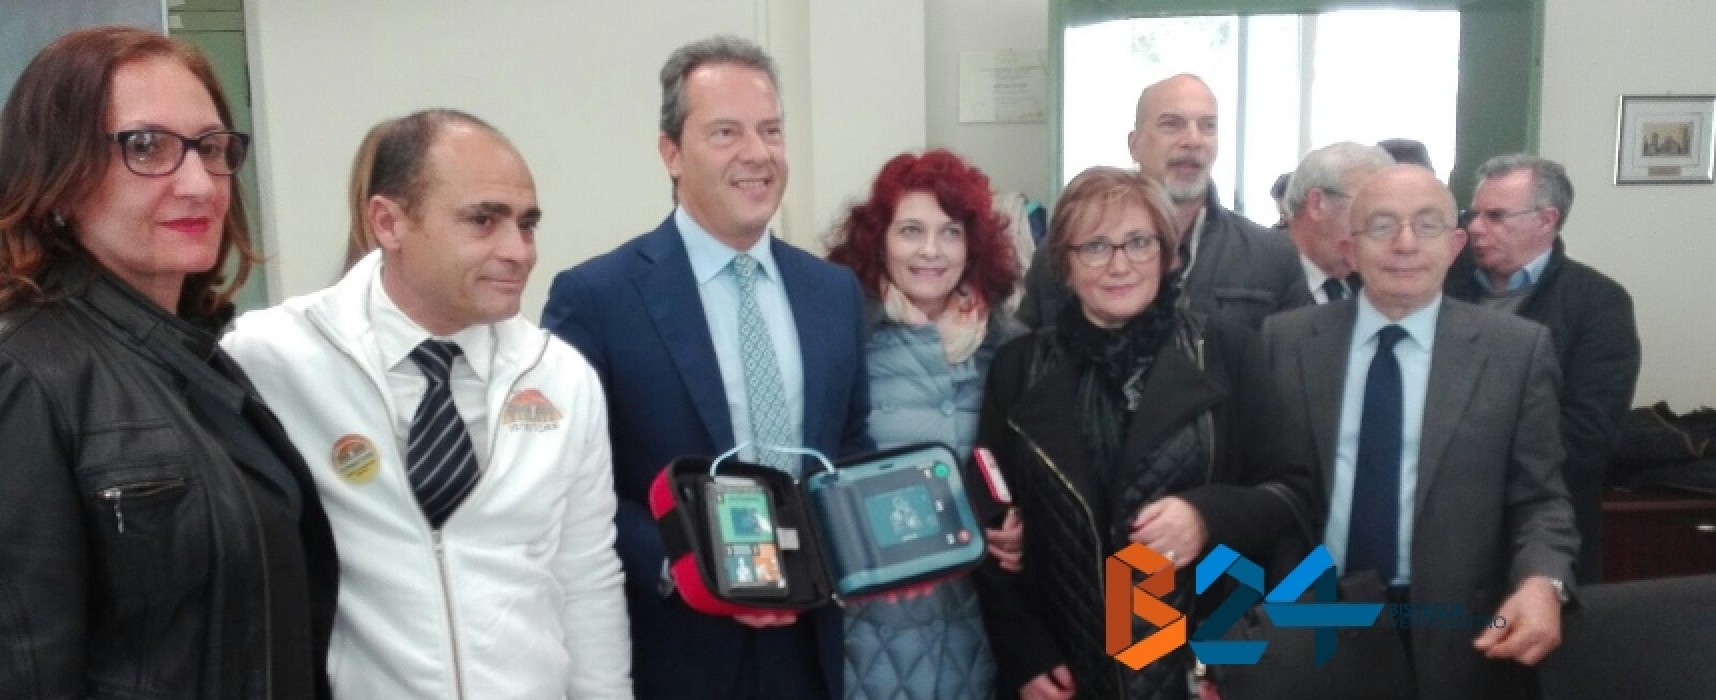 Consegna defibrillatori a scuole biscegliesi, Spina:“Alunni ricevono uno strumento prezioso” / FOTO